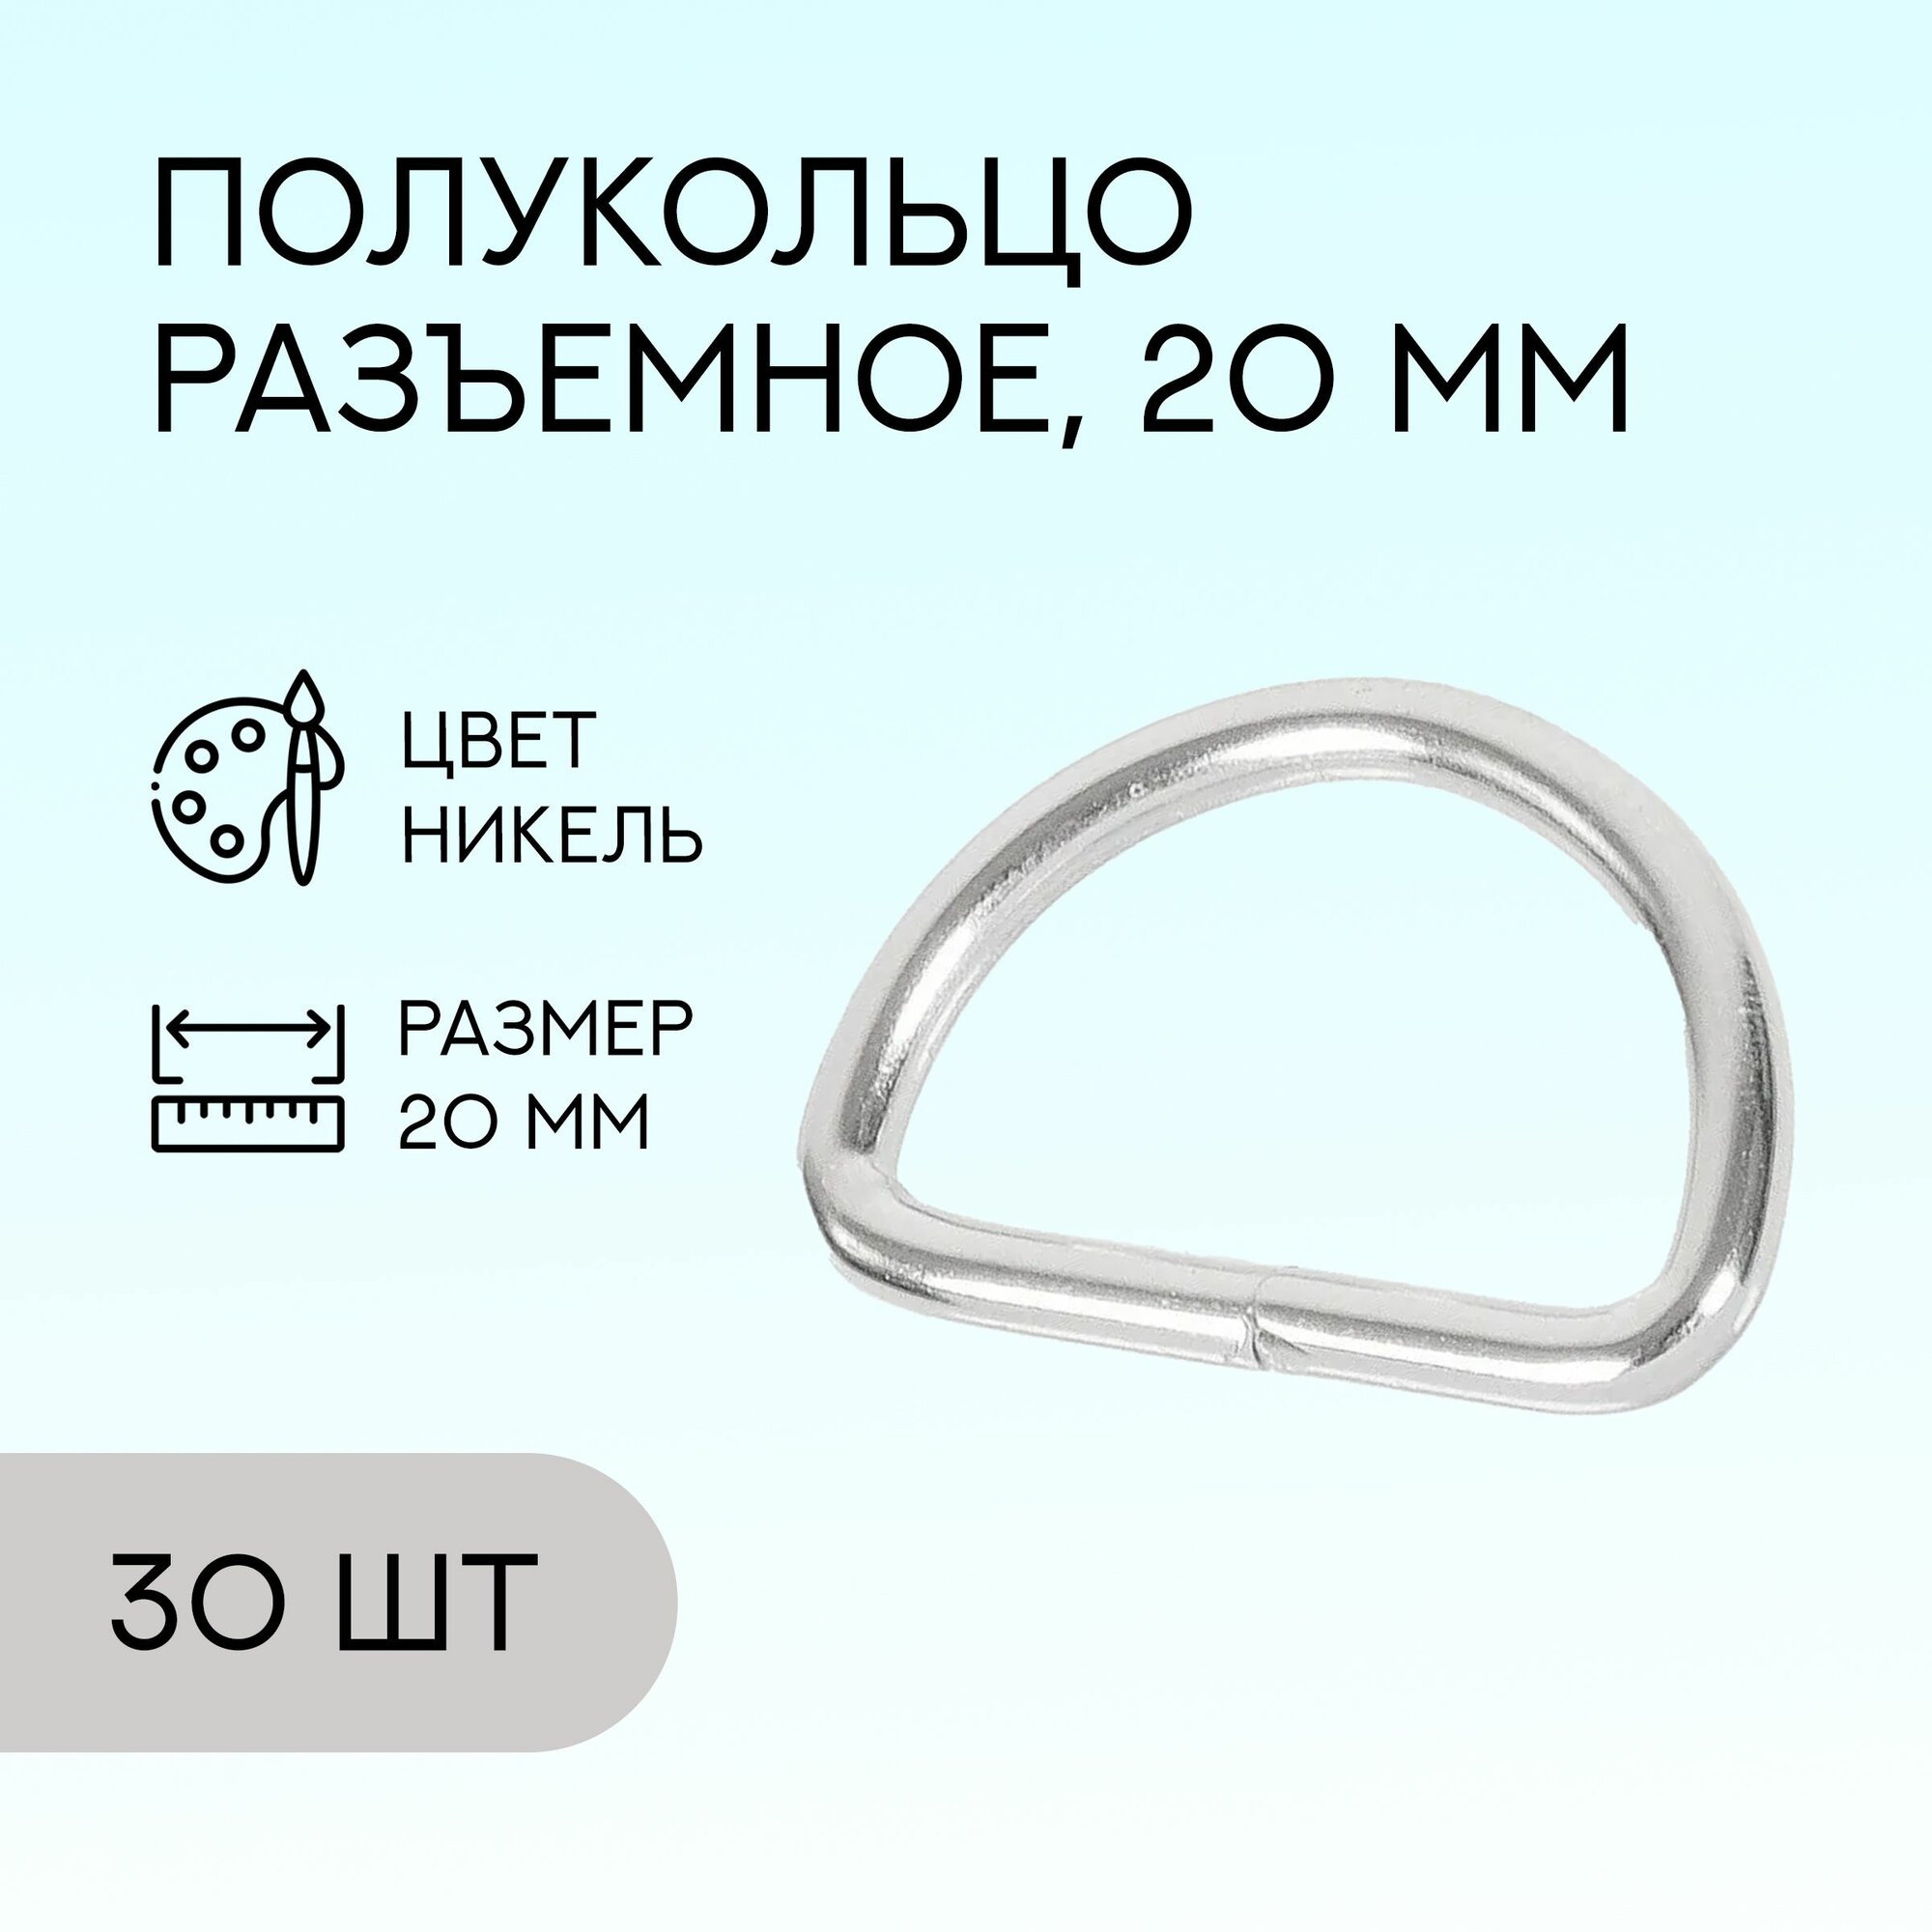 Полукольцо разъемное, 20 мм, никель, 30 шт. / кольцо для сумок и рукоделия / FG-129083_30